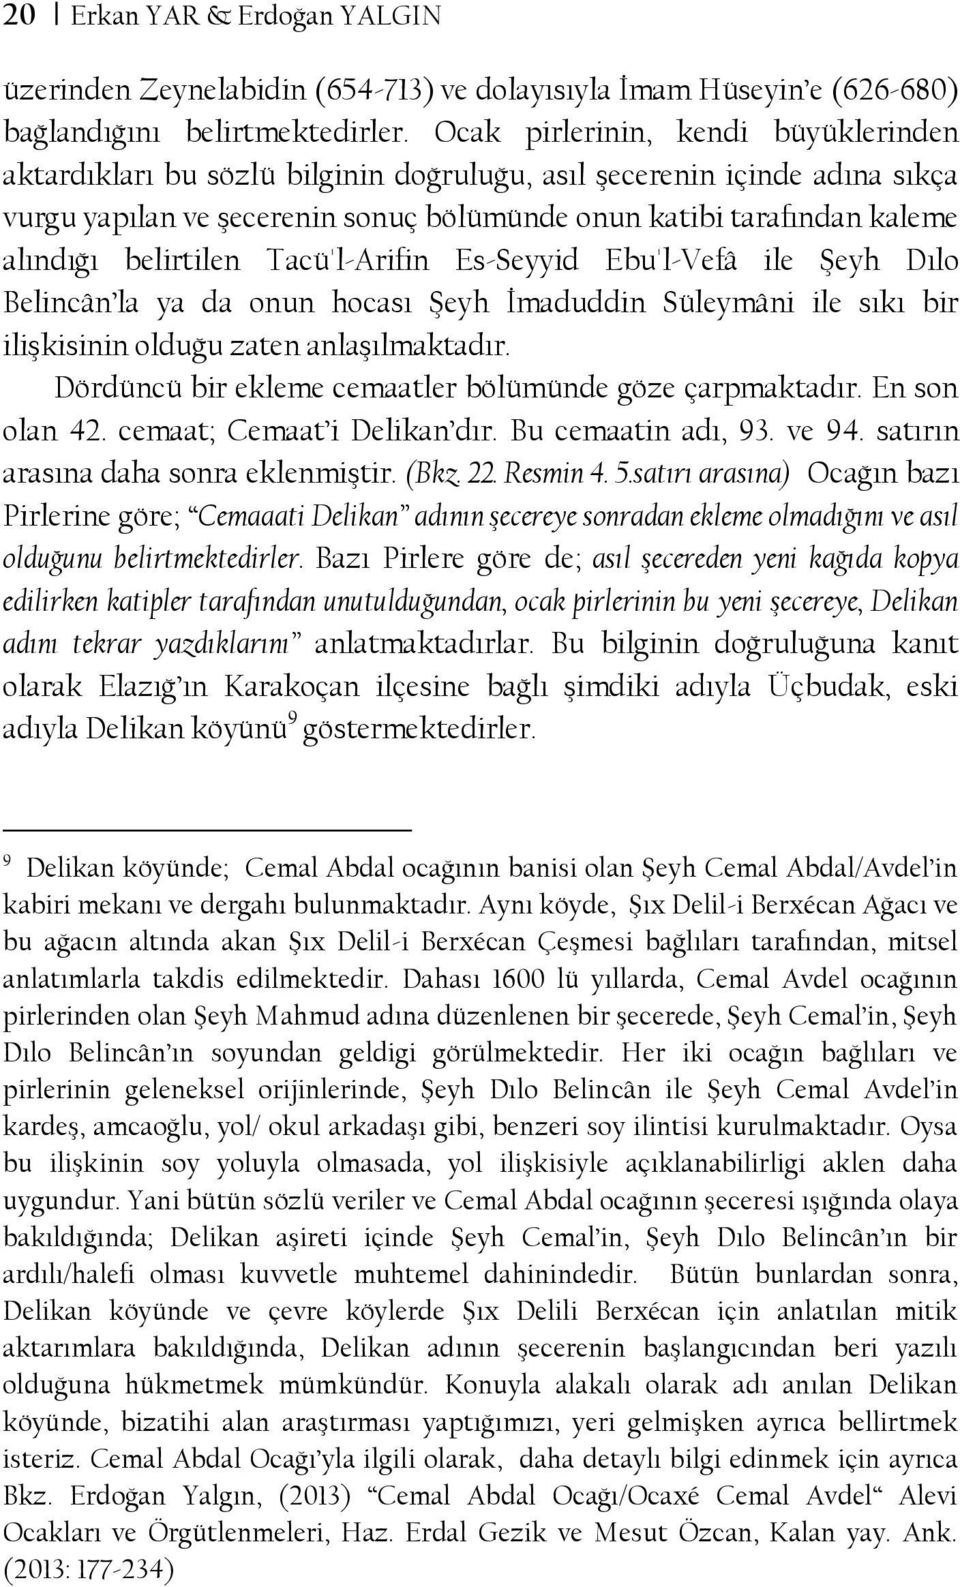 belirtilen Tacü'l-Arifin Es-Seyyid Ebu'l-Vefâ ile Şeyh Dılo Belincân la ya da onun hocası Şeyh İmaduddin Süleymâni ile sıkı bir ilişkisinin olduğu zaten anlaşılmaktadır.